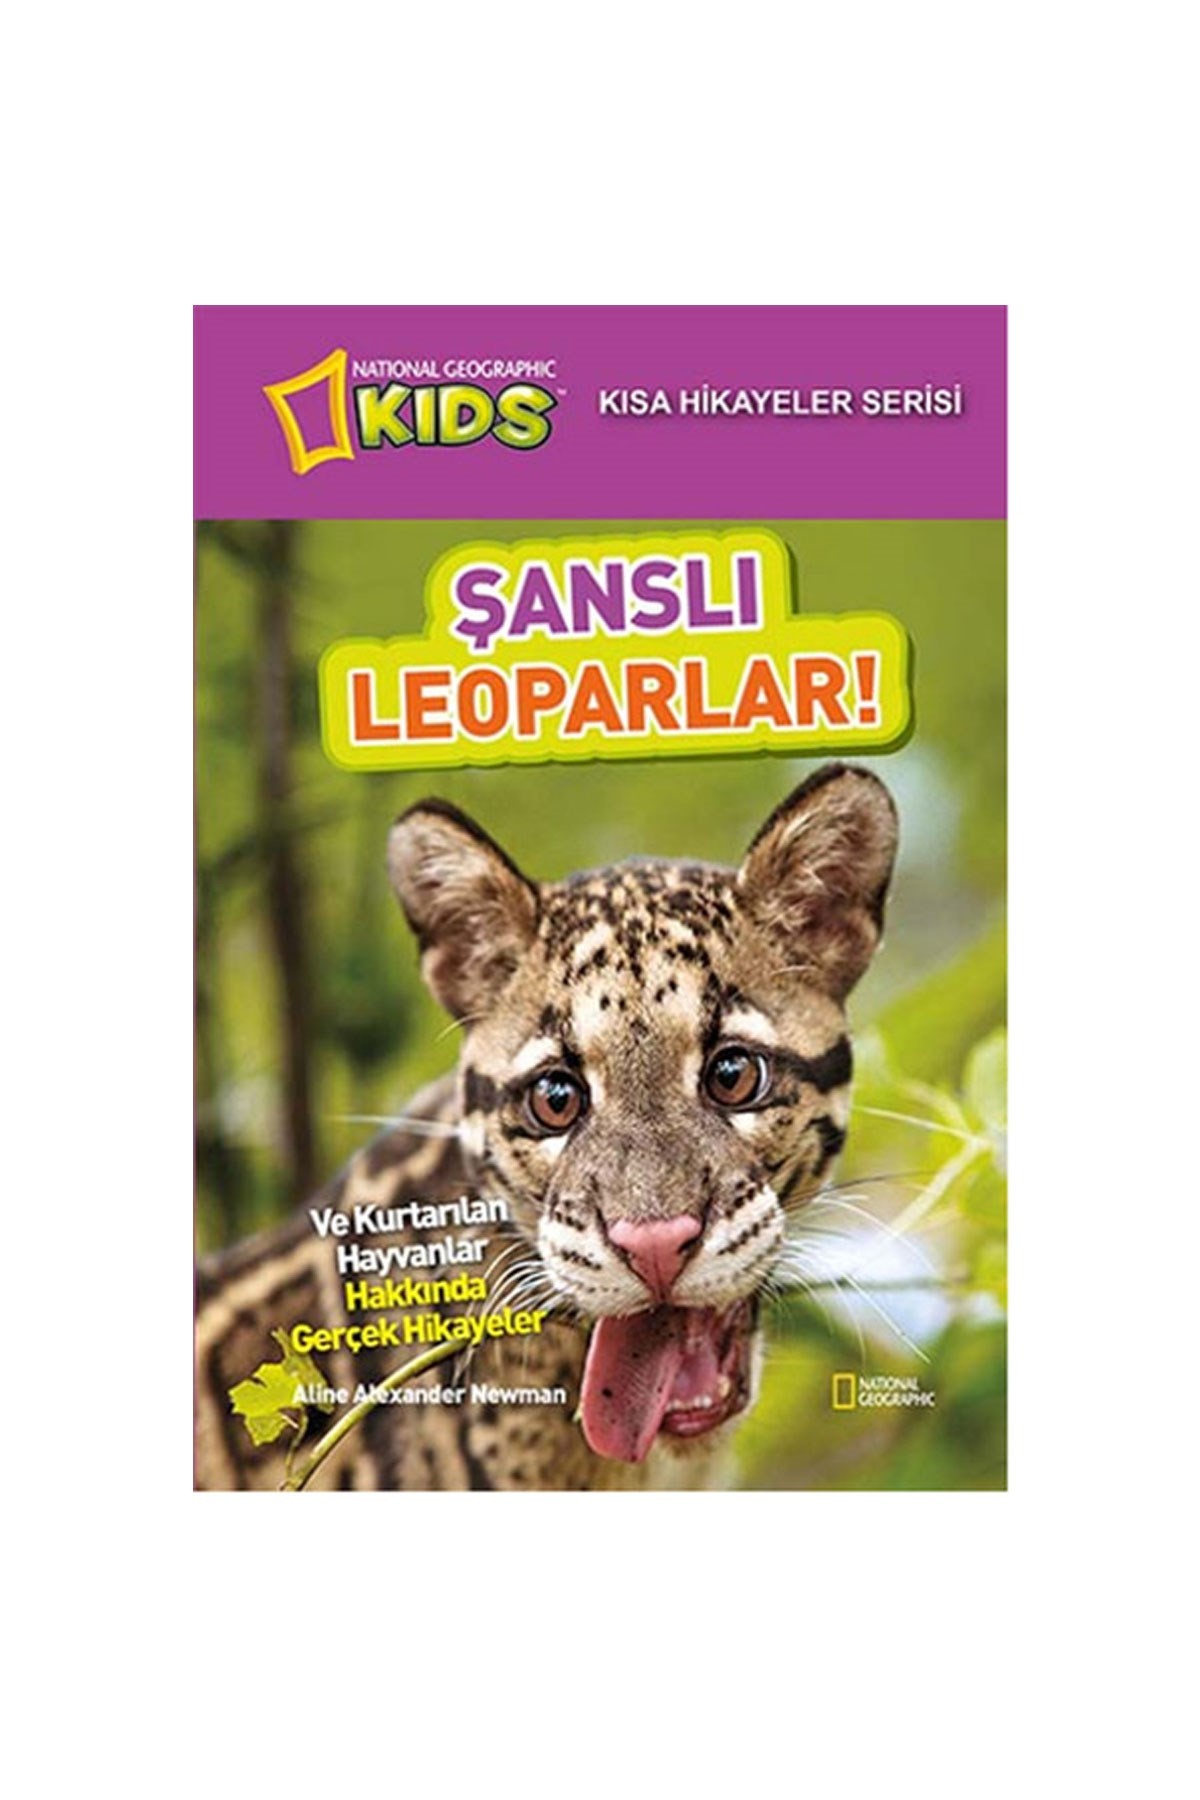 National Geographic Kids Şanslı Leoparlar